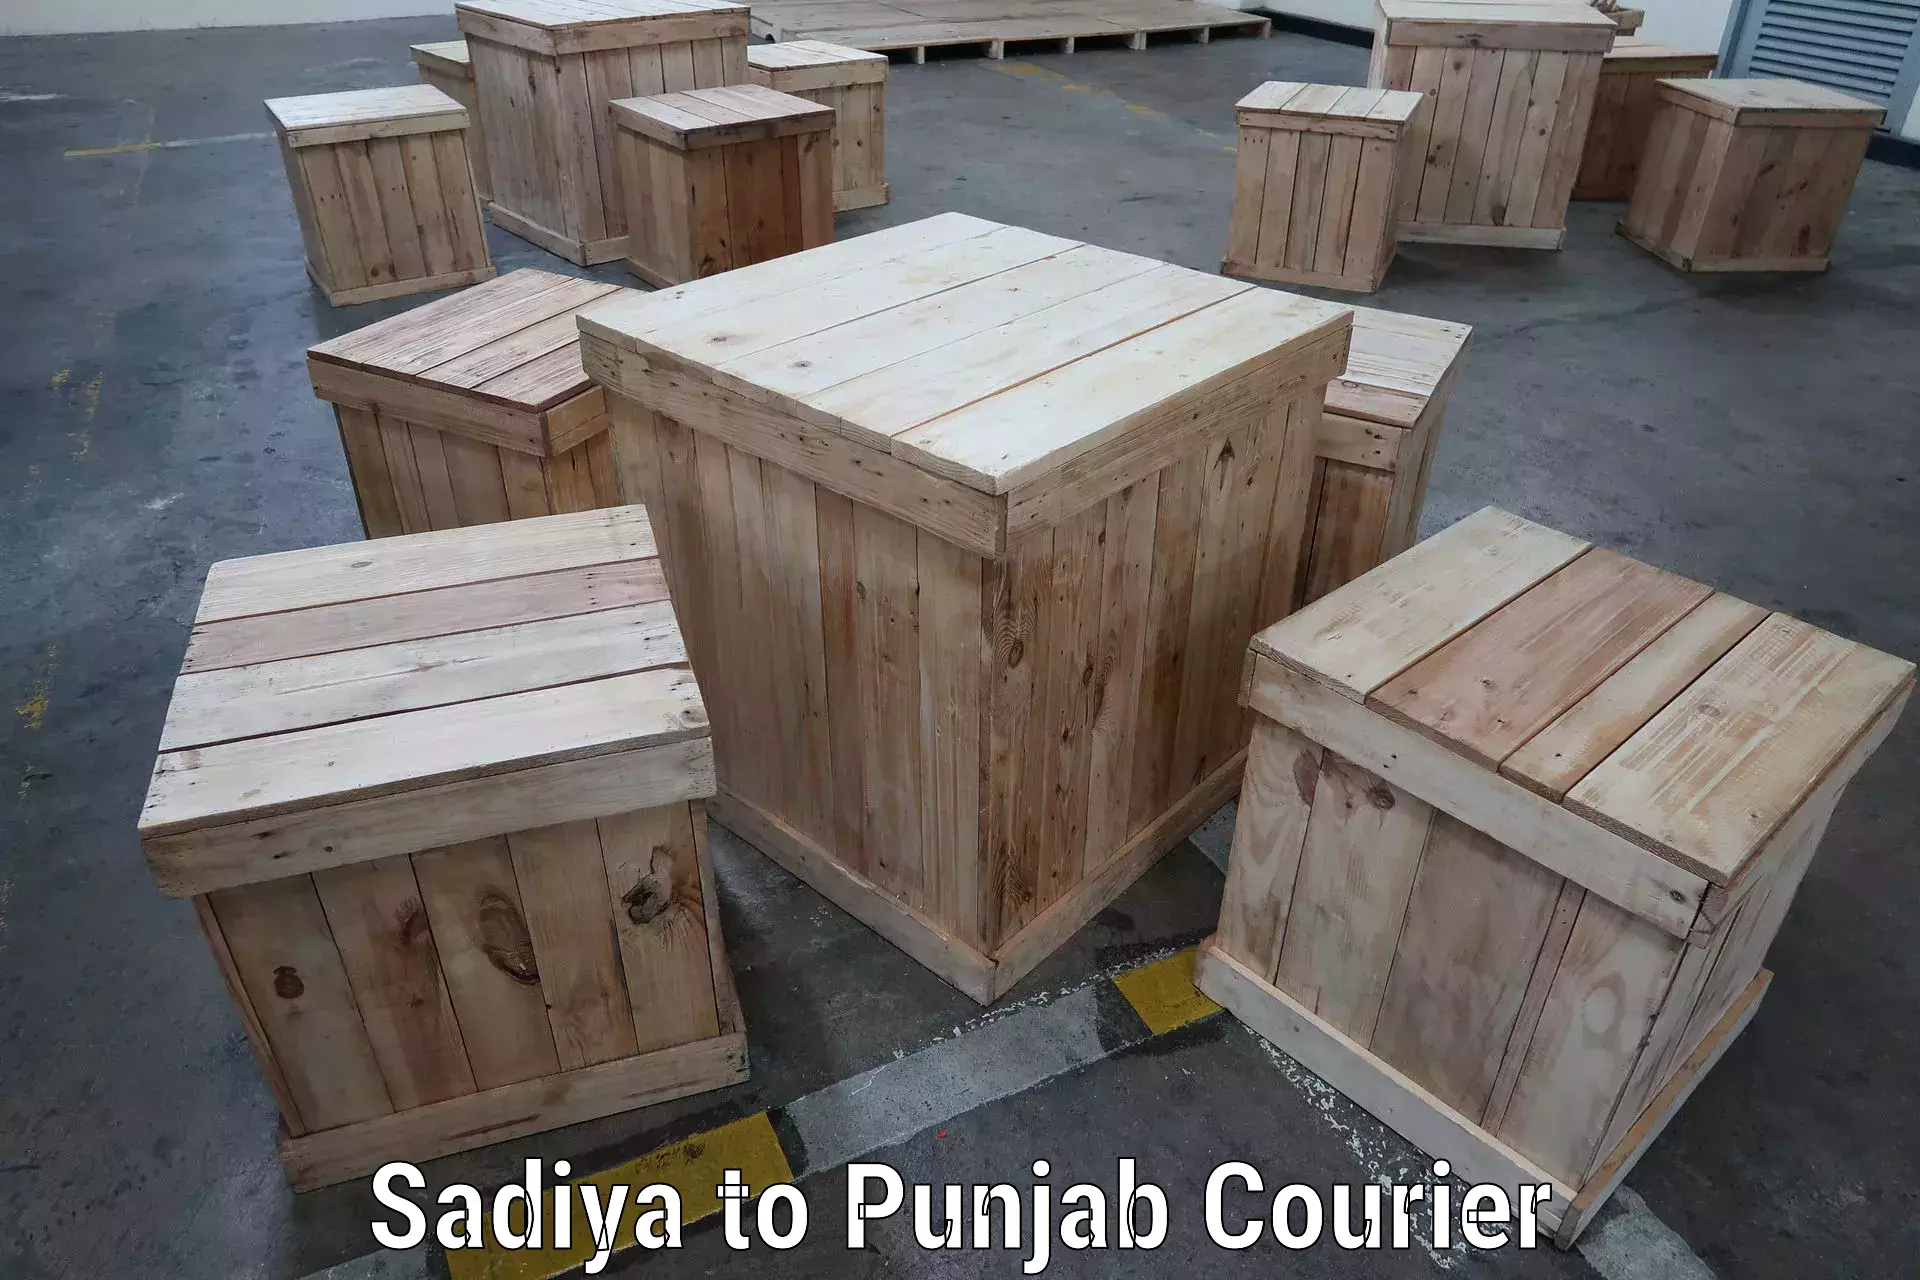 High-quality delivery services Sadiya to Punjab